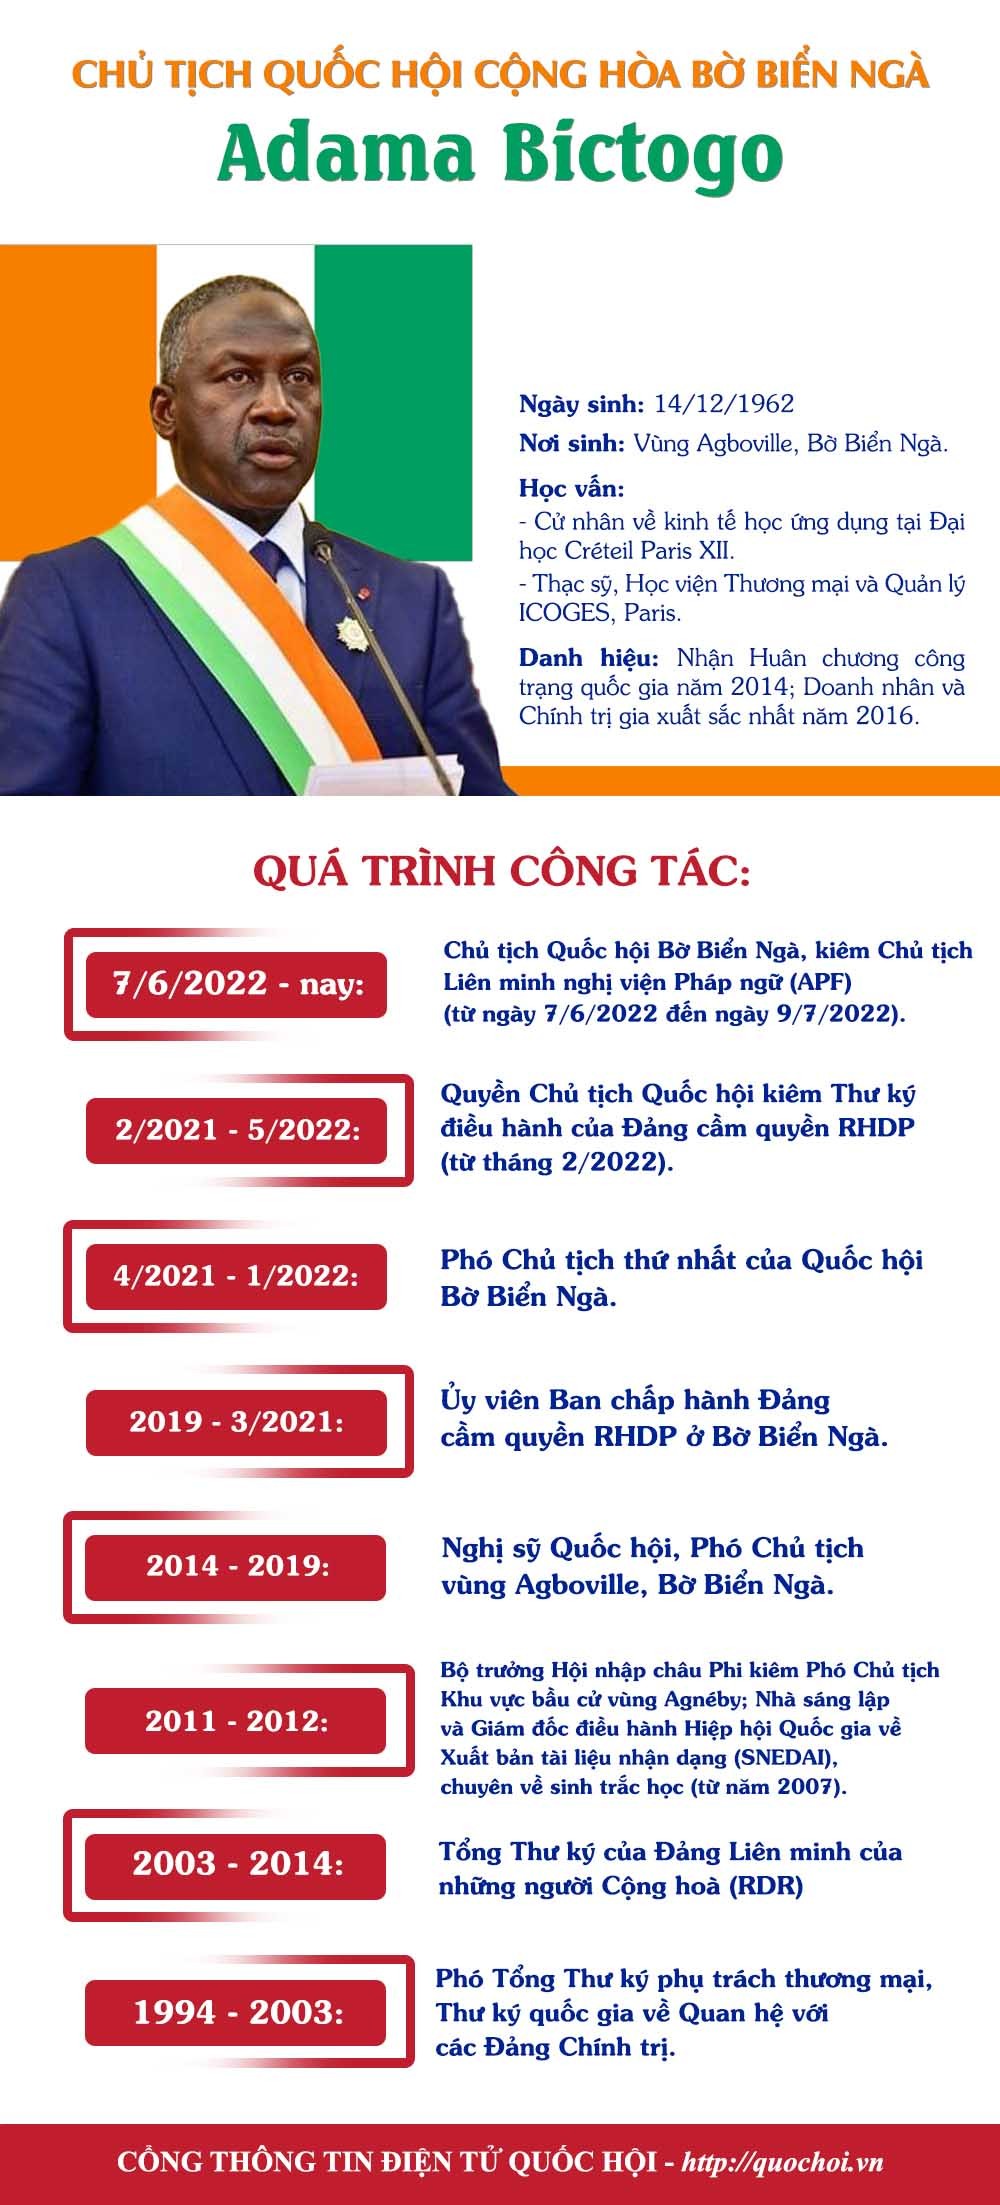 Chủ tịch Quốc hội Cộng hòa Bờ Biển Ngà sắp thăm chính thức Việt Nam